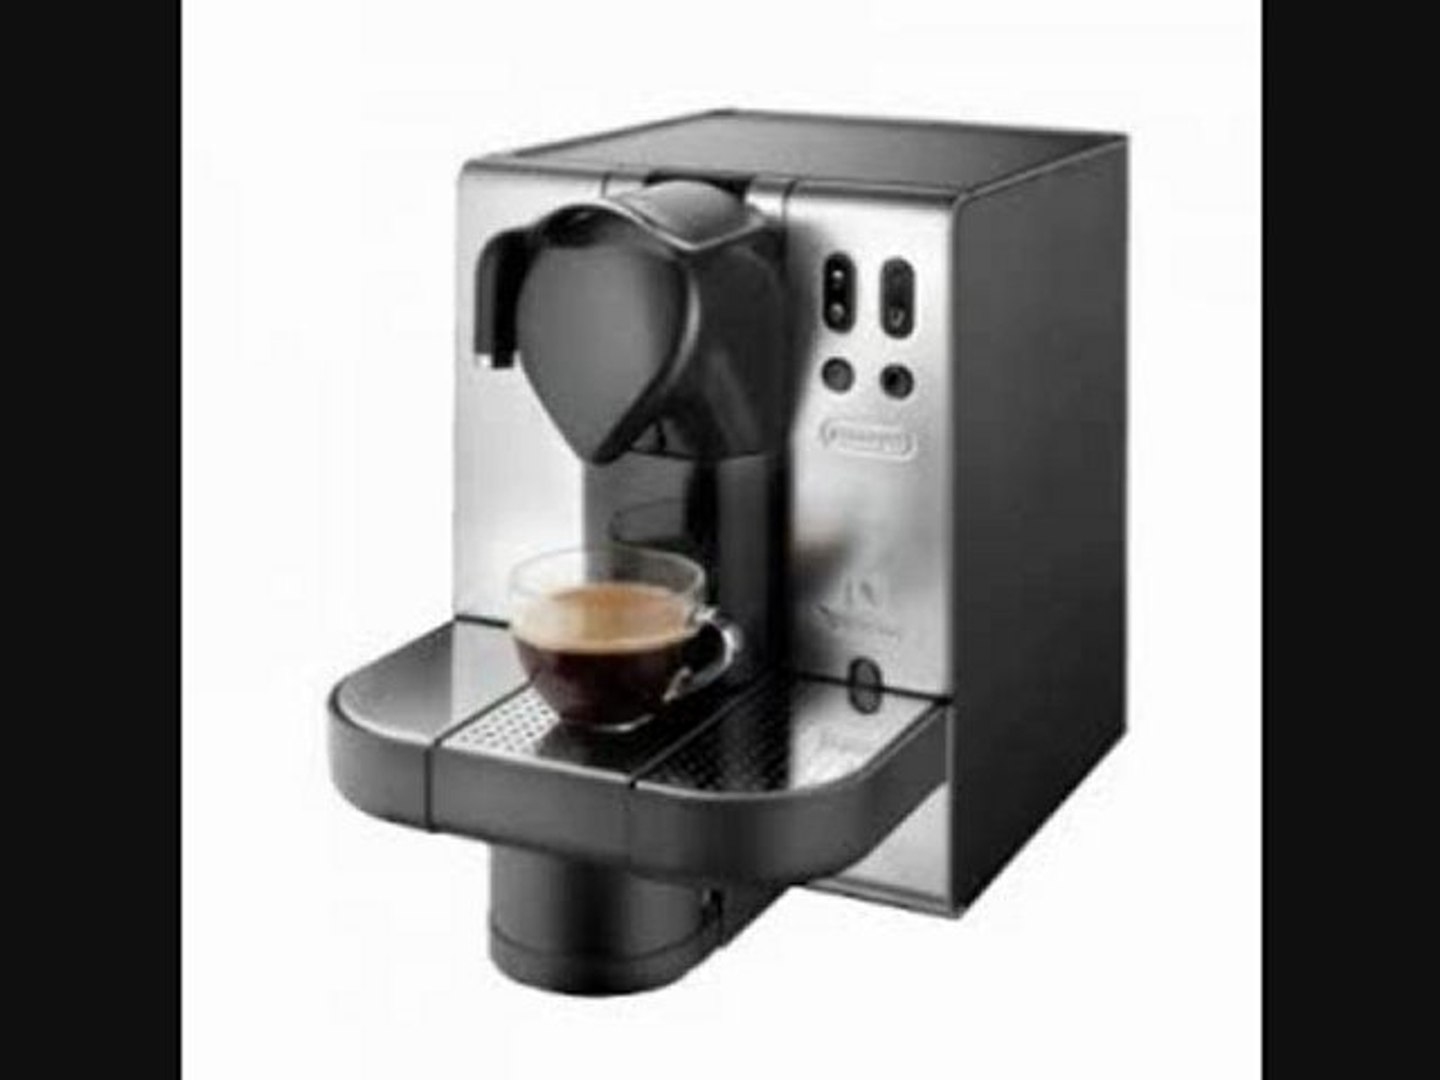 Maquina Nespresso Delonghi Lattissima en680 - video Dailymotion